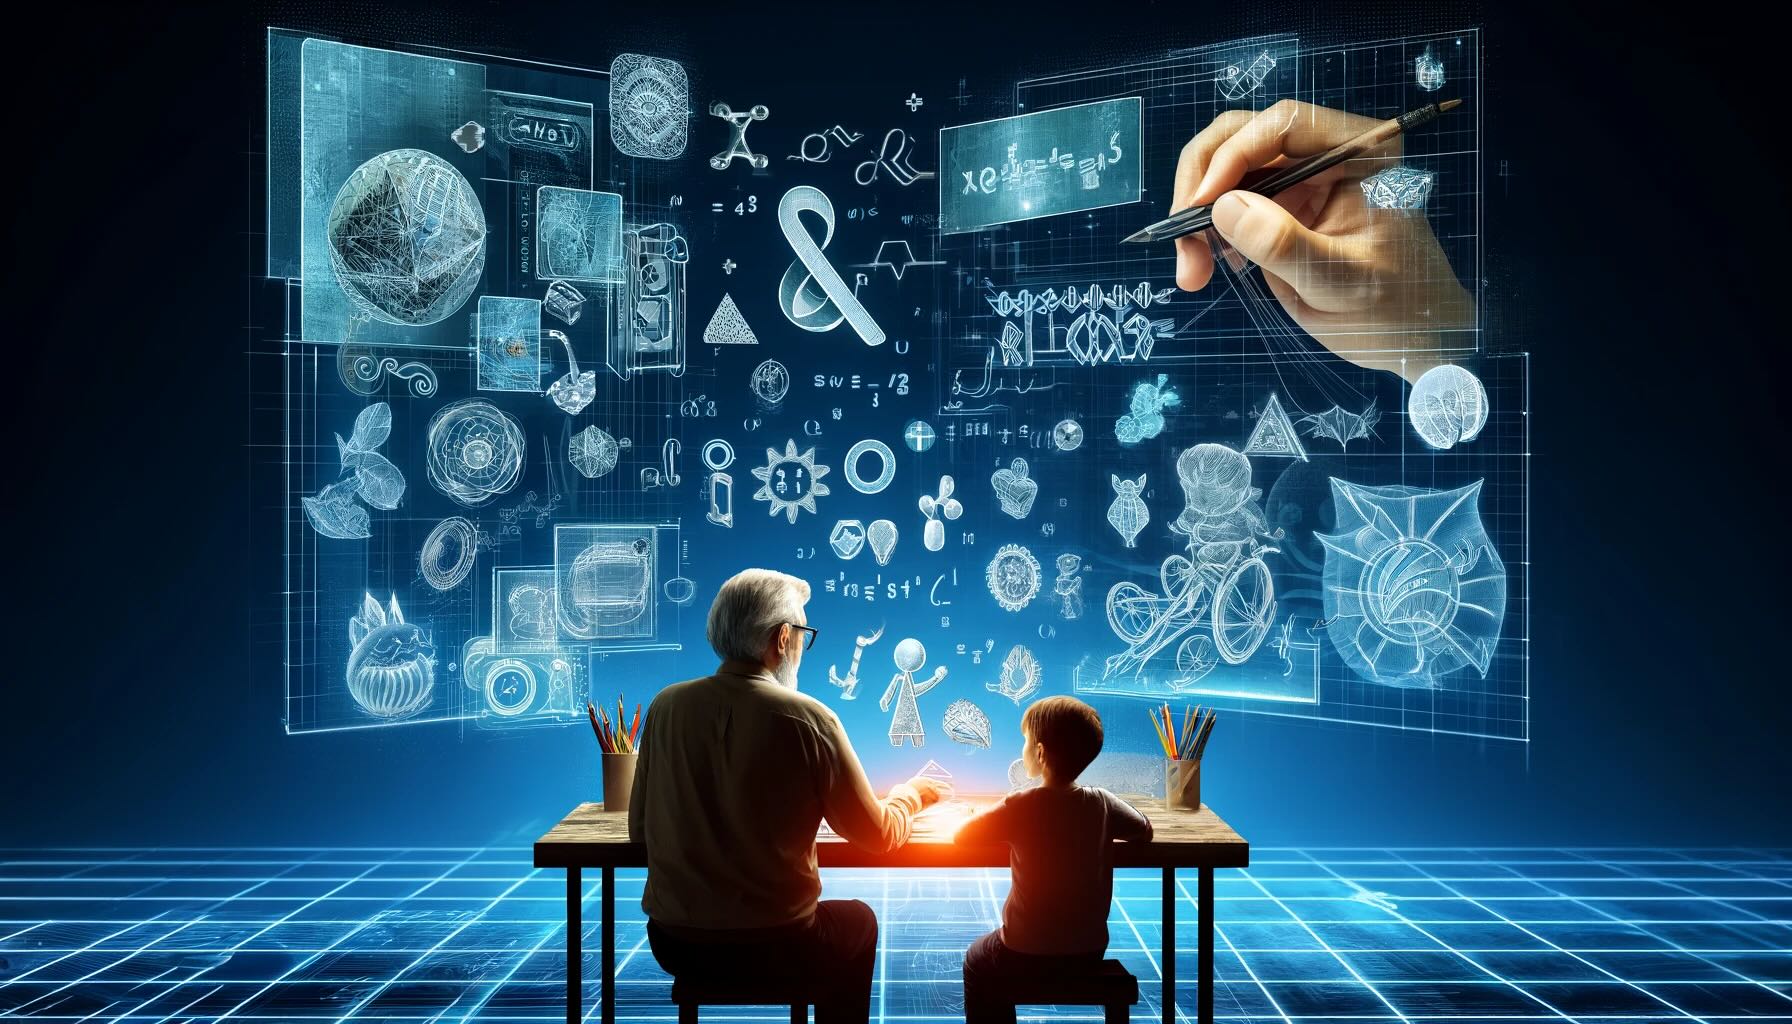 Starszy mężczyzna i chłopiec siedzą przy stole z kredkami, otoczeni hologramami przedstawiającymi różnorodne obiekty i formuły naukowe na tle niebieskiej, cyfrowej siatki.